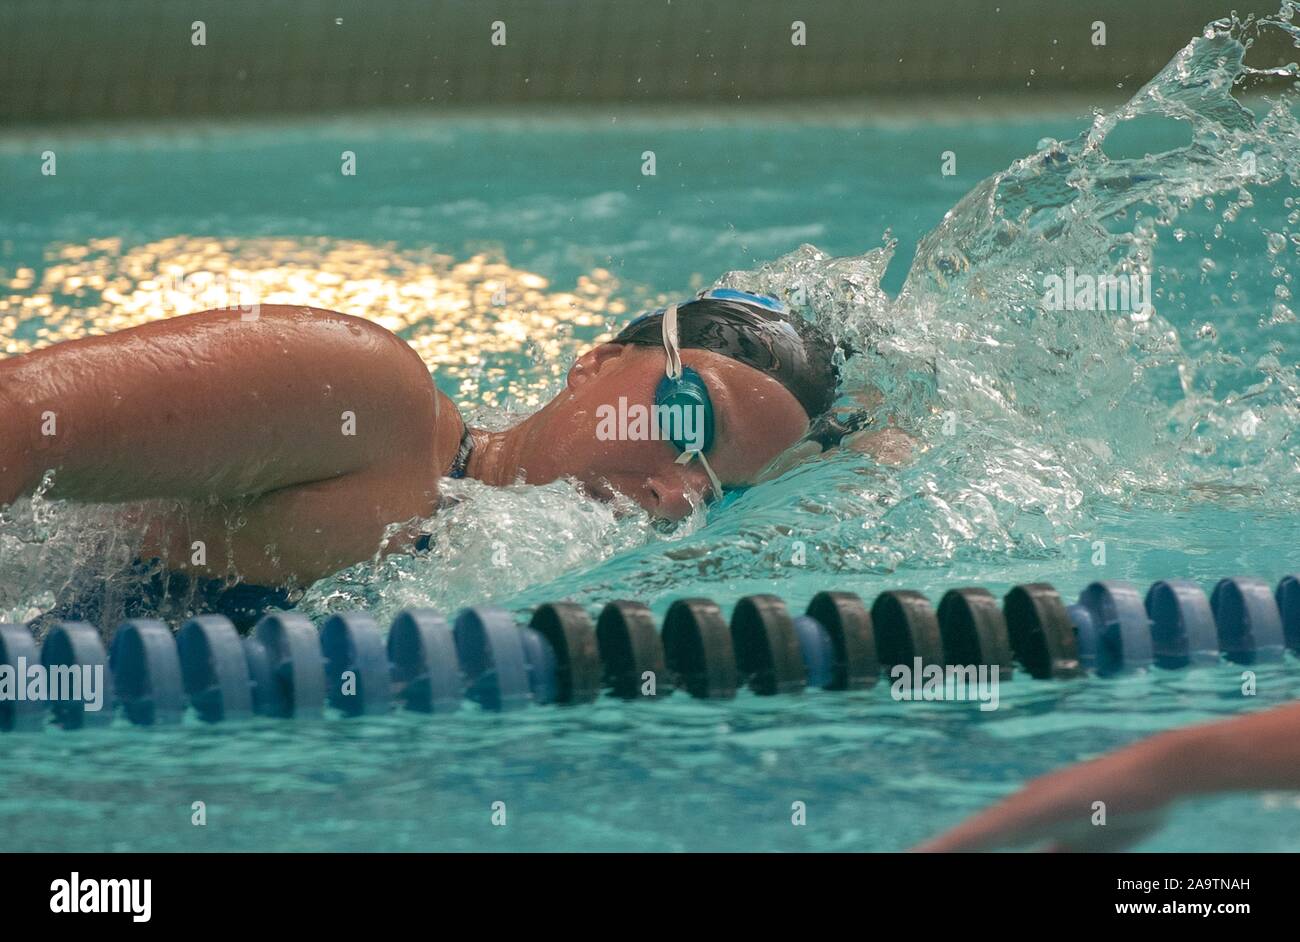 Perfil oculto toma desde el pecho de un hombre de la Universidad Johns Hopkins, miembro del equipo de natación se mueve a través del agua mientras realiza una sidestroke, 14 de enero de 2005. Desde el Homewood Fotografías. () Foto de stock